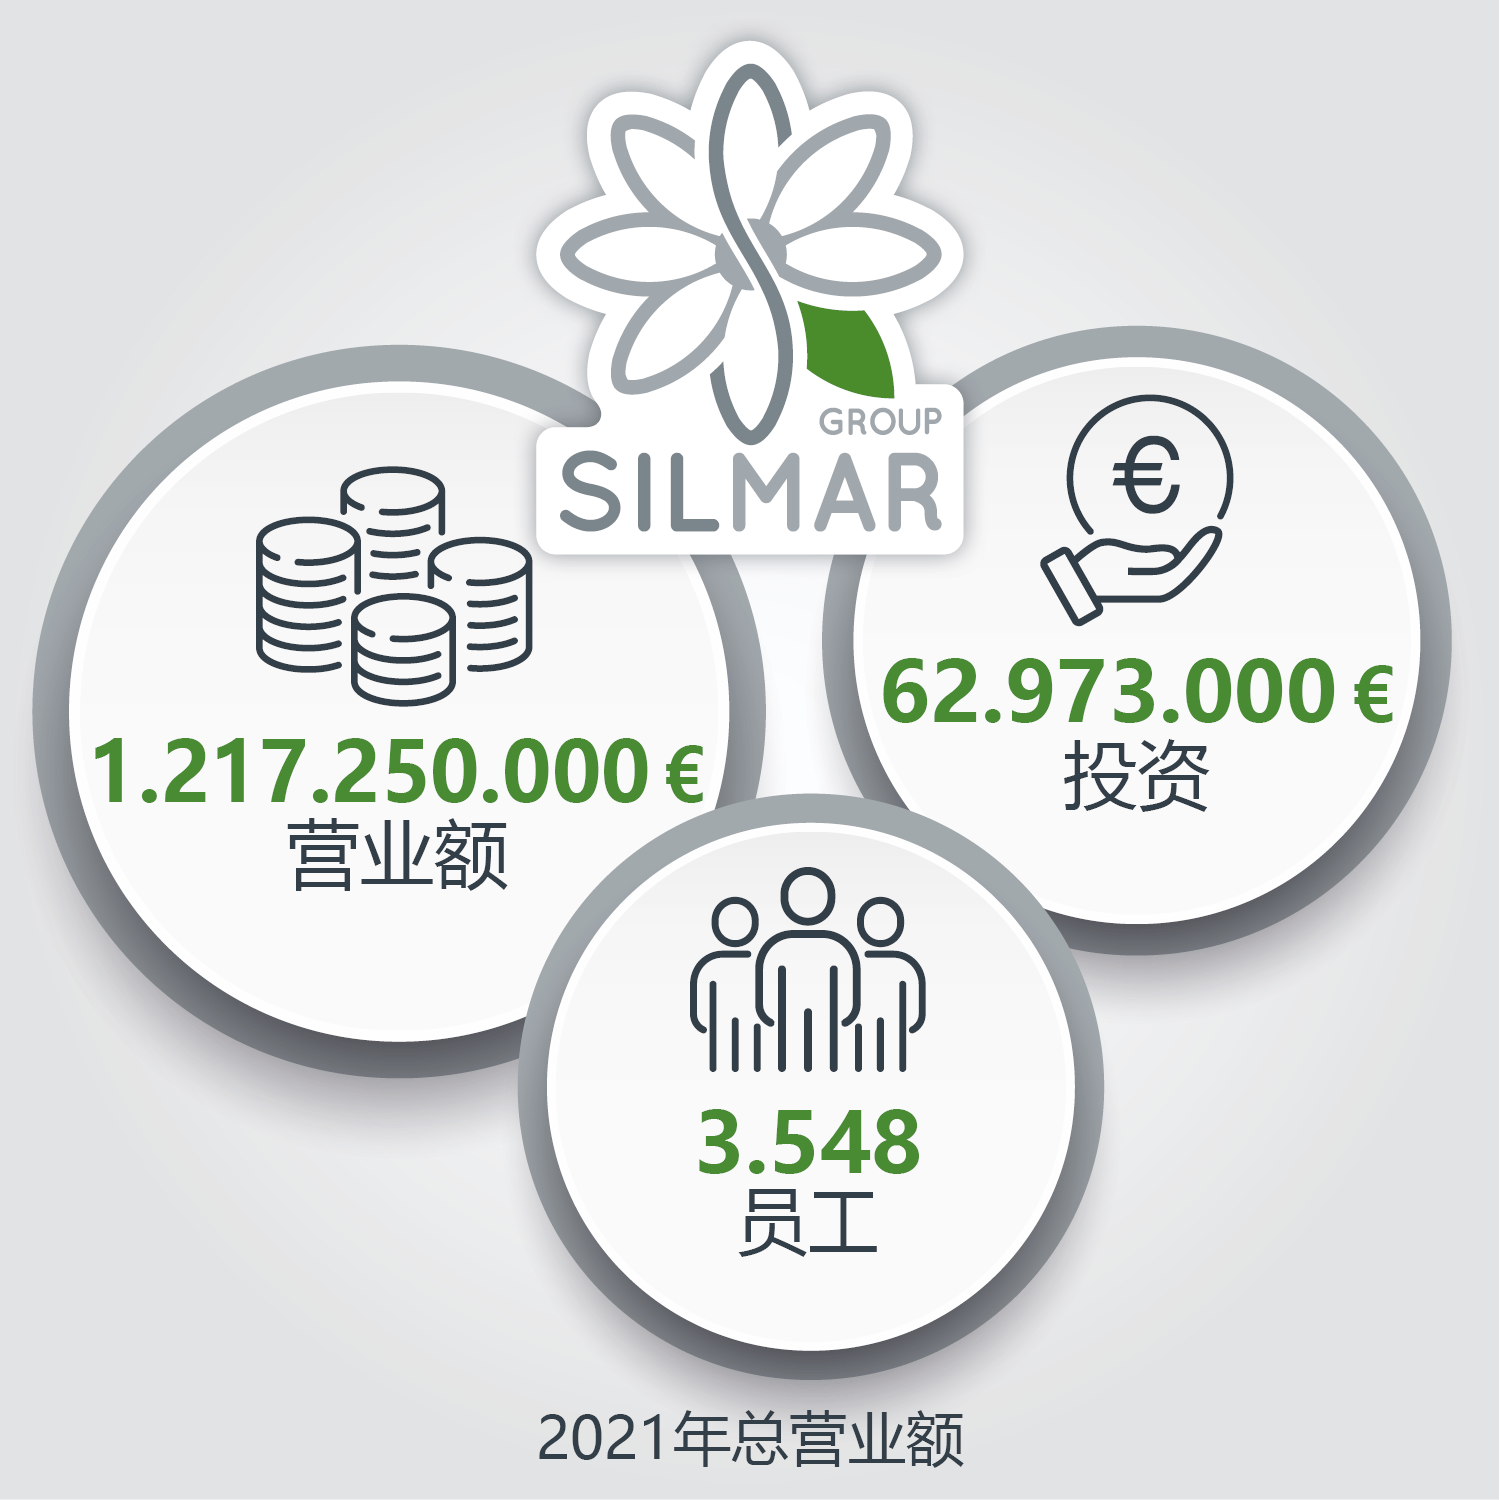 SILMAR希尔玛集团2021年年度财务报告